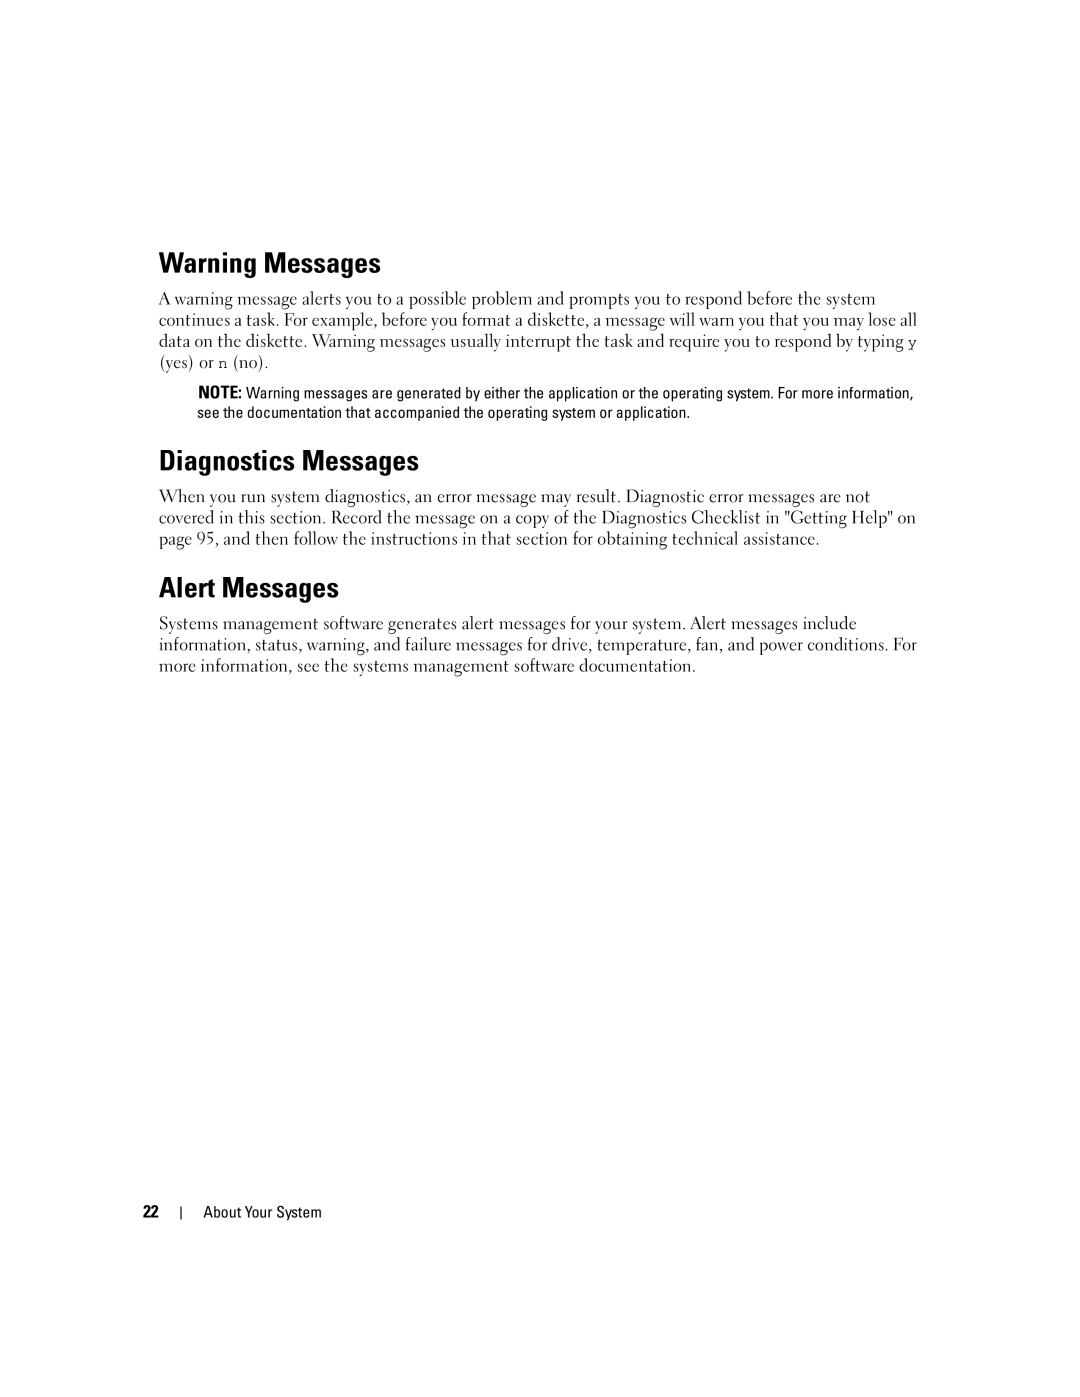 Dell SC1435 owner manual Diagnostics Messages, Alert Messages 